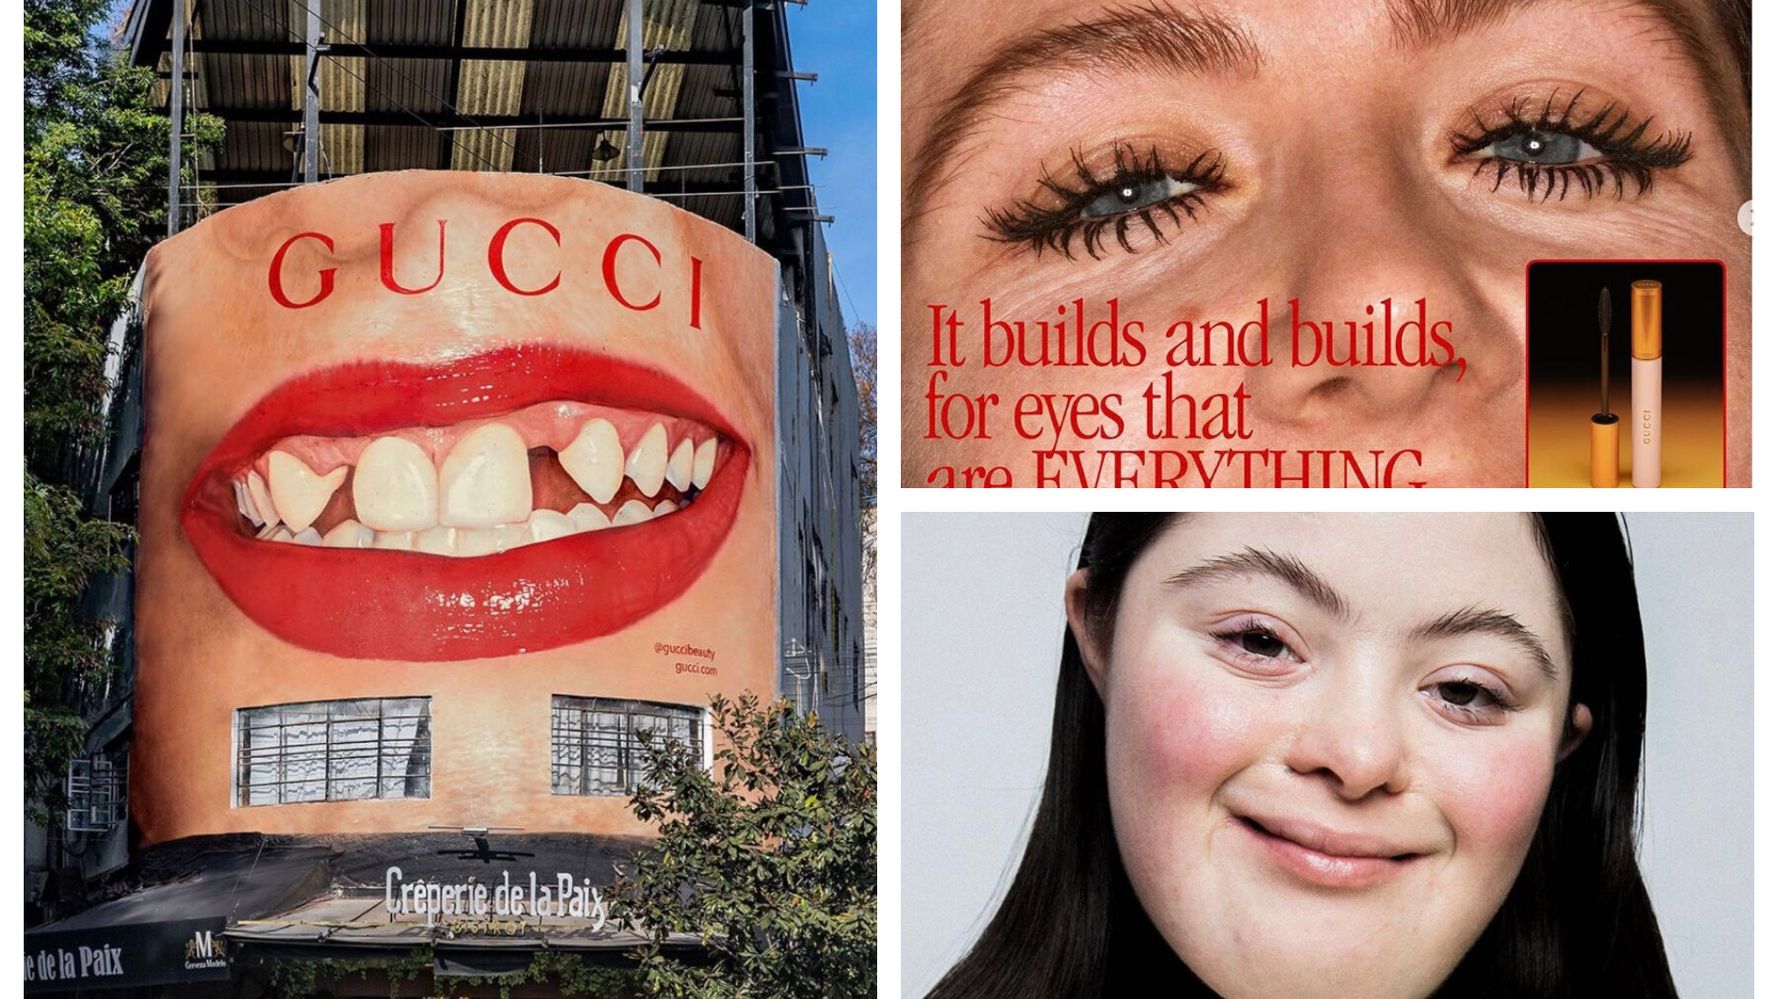 グッチの広告が新しい 歯並びが揃っていないモデル しわを修正しない写真 美の価値観 覆す広告を展開 ハフポスト